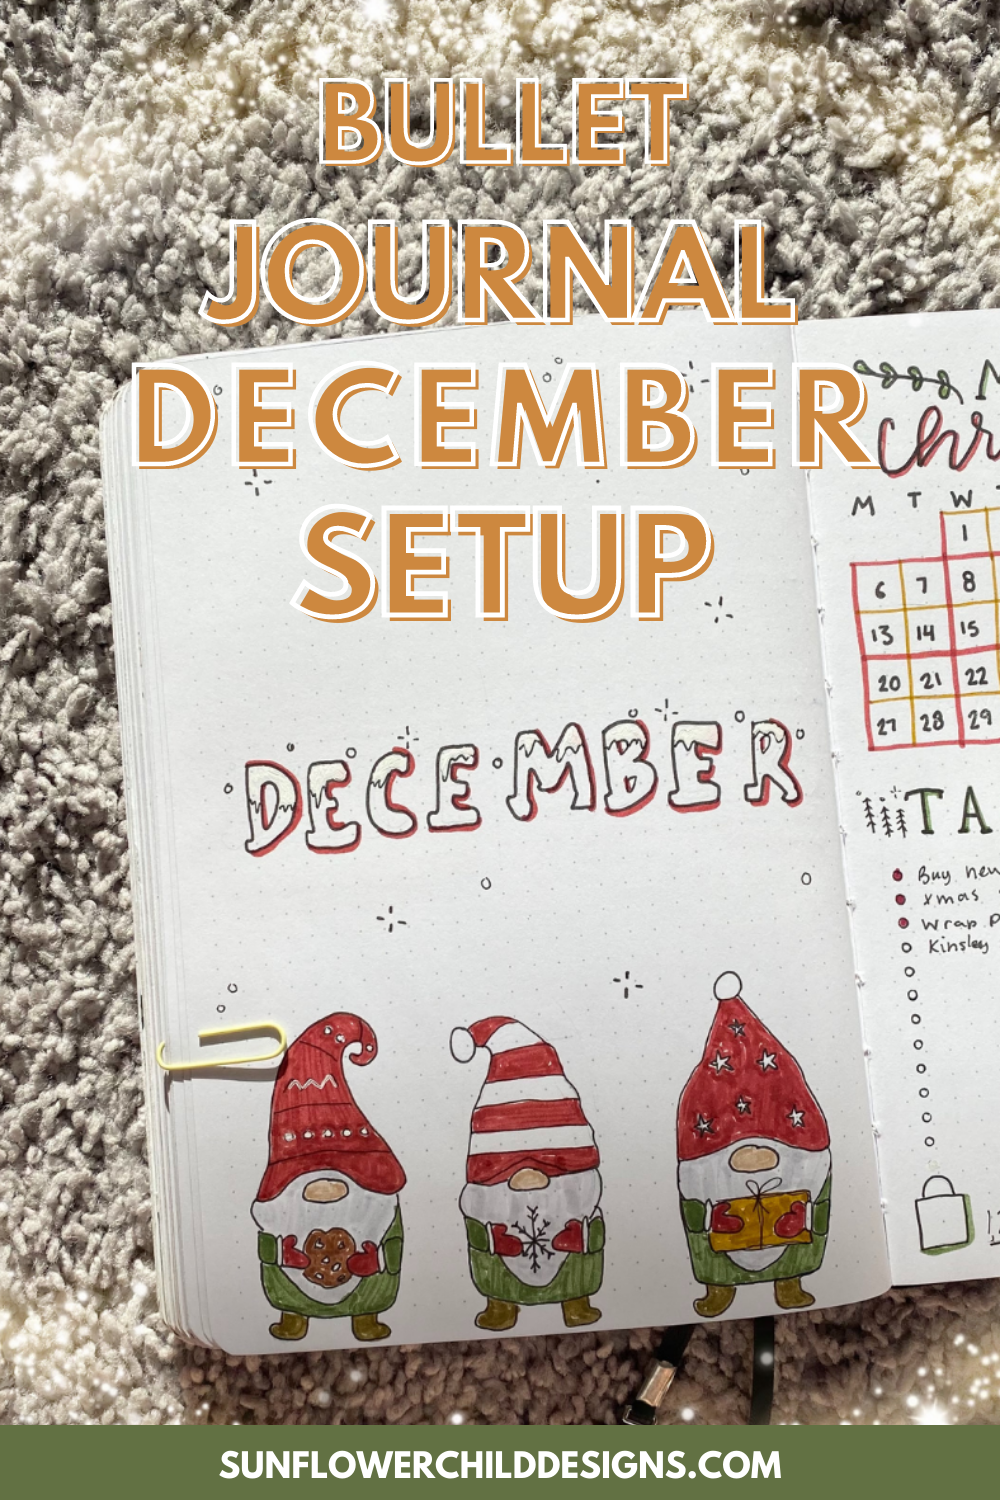 December-bullet-journal-ideas-14.png